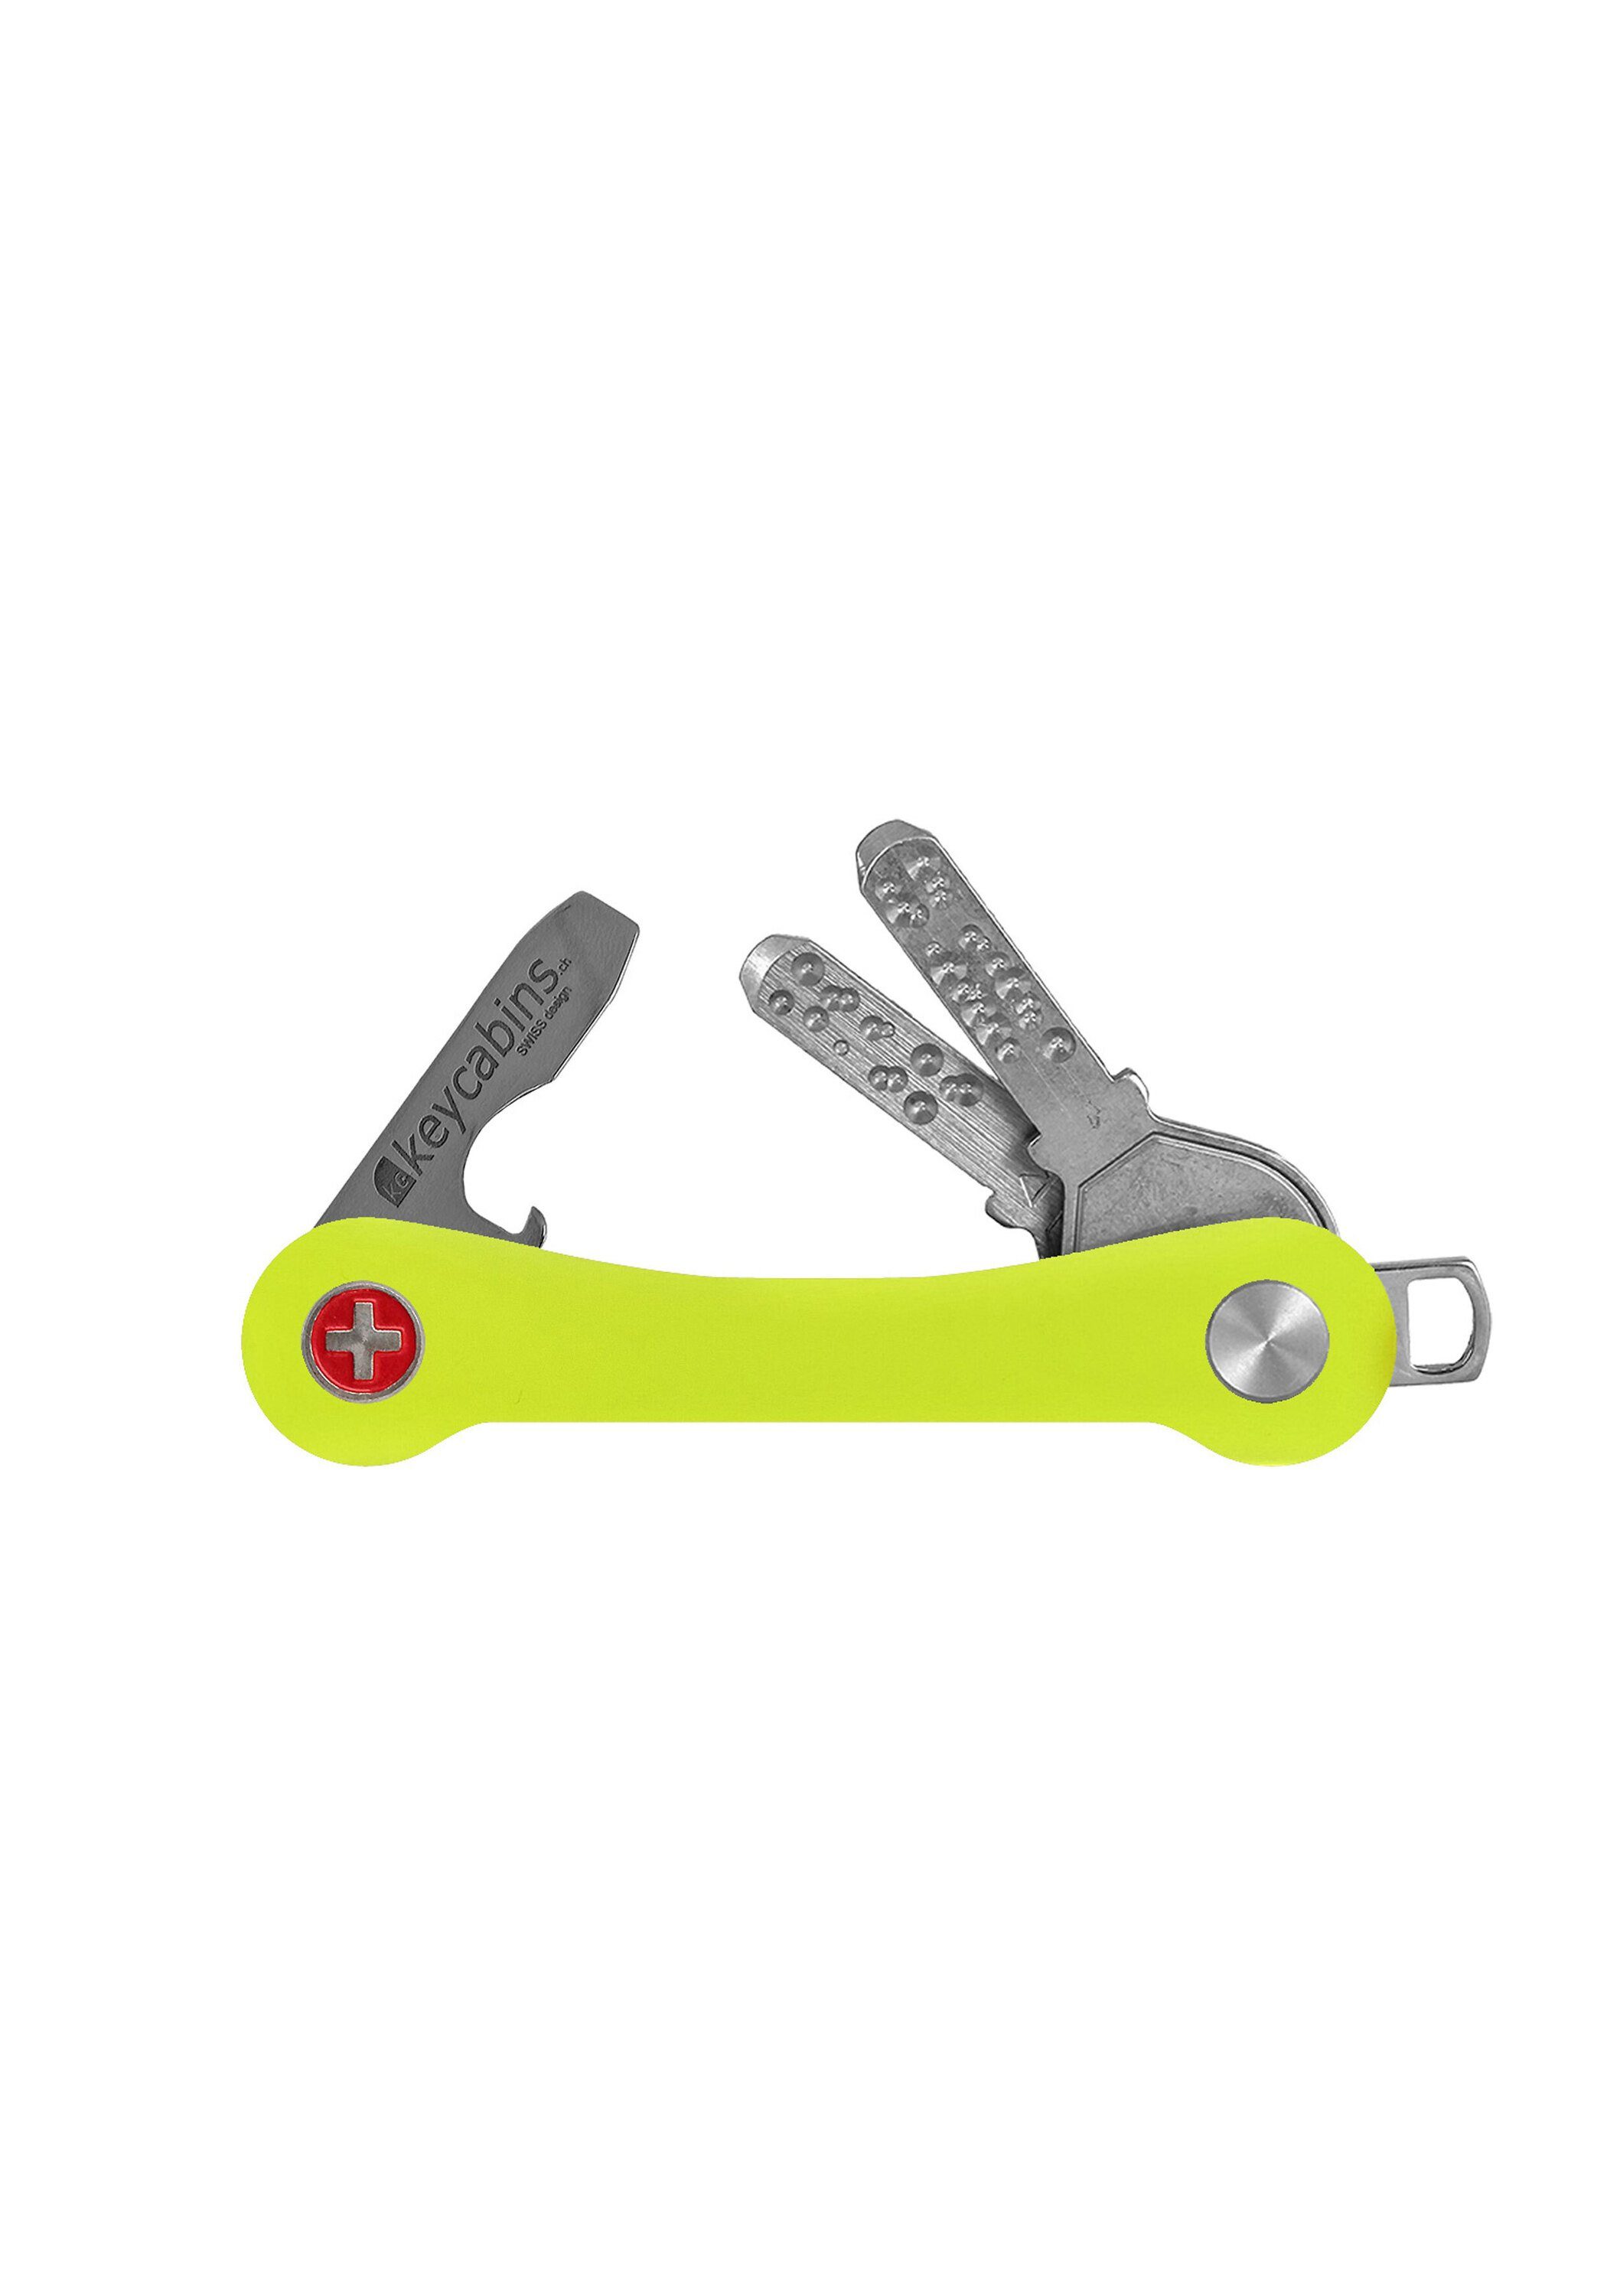 made Snowboard-Ski keycabins yellow SWISS neon S1, Schlüsselanhänger